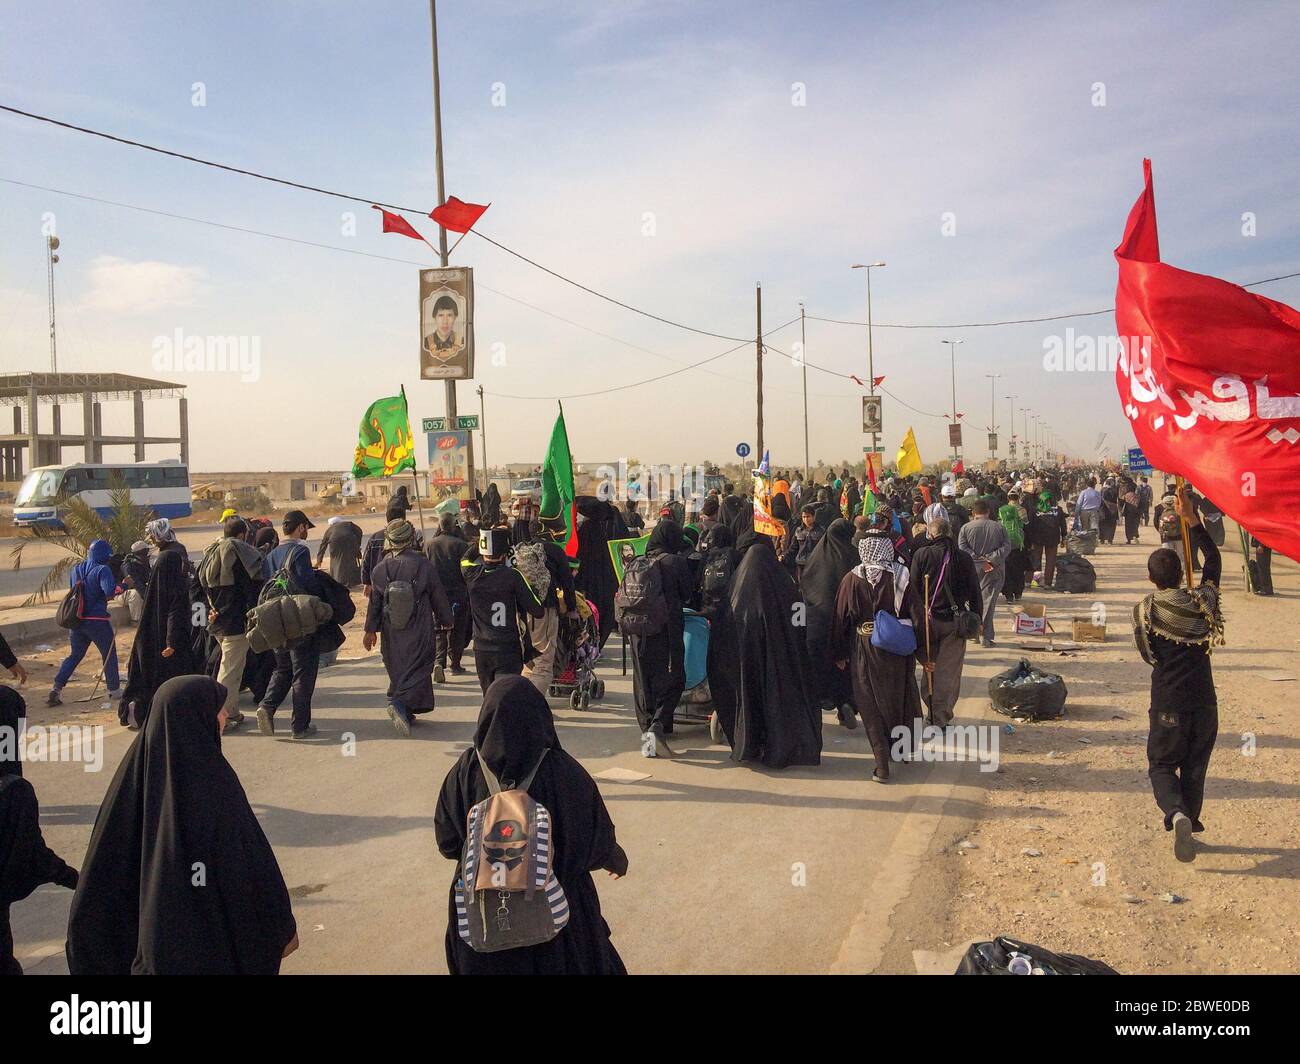 Karbala, Bagdad, Irak, 06 09 2019: Eine religiöse Bewegung im Irak. Karbala Stadt. Millionen besuchen die Arbaeen Gedenkfeier in Karbala. Stockfoto